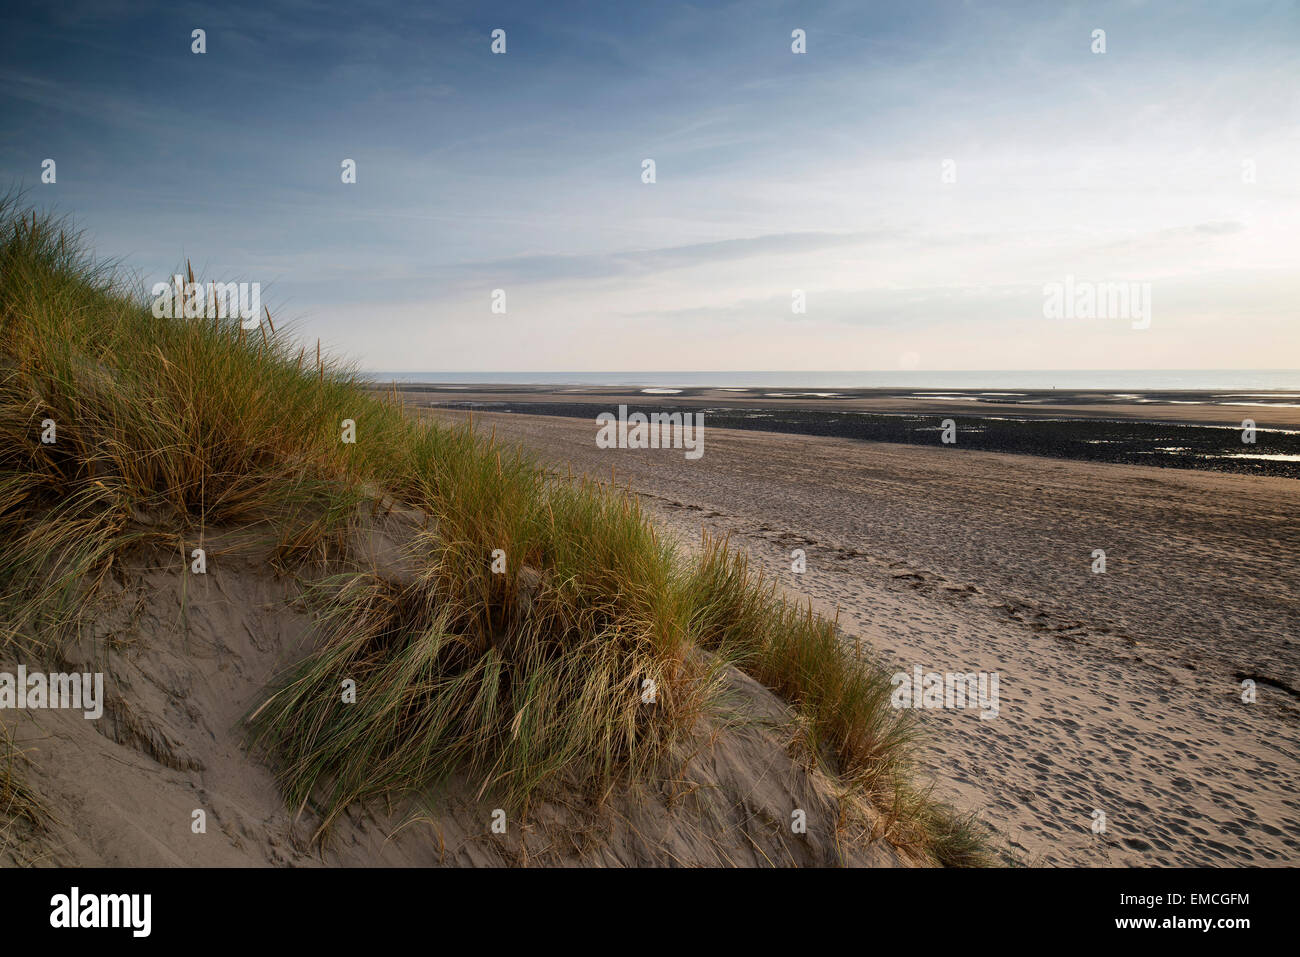 Sera paesaggio estivo oltre grassy dune di sabbia sulla spiaggia Foto Stock